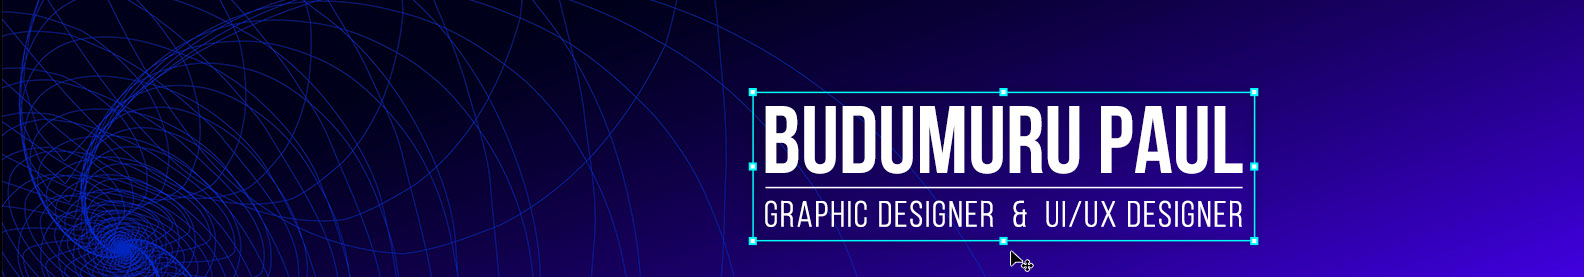 Paul Budumuru's profile banner